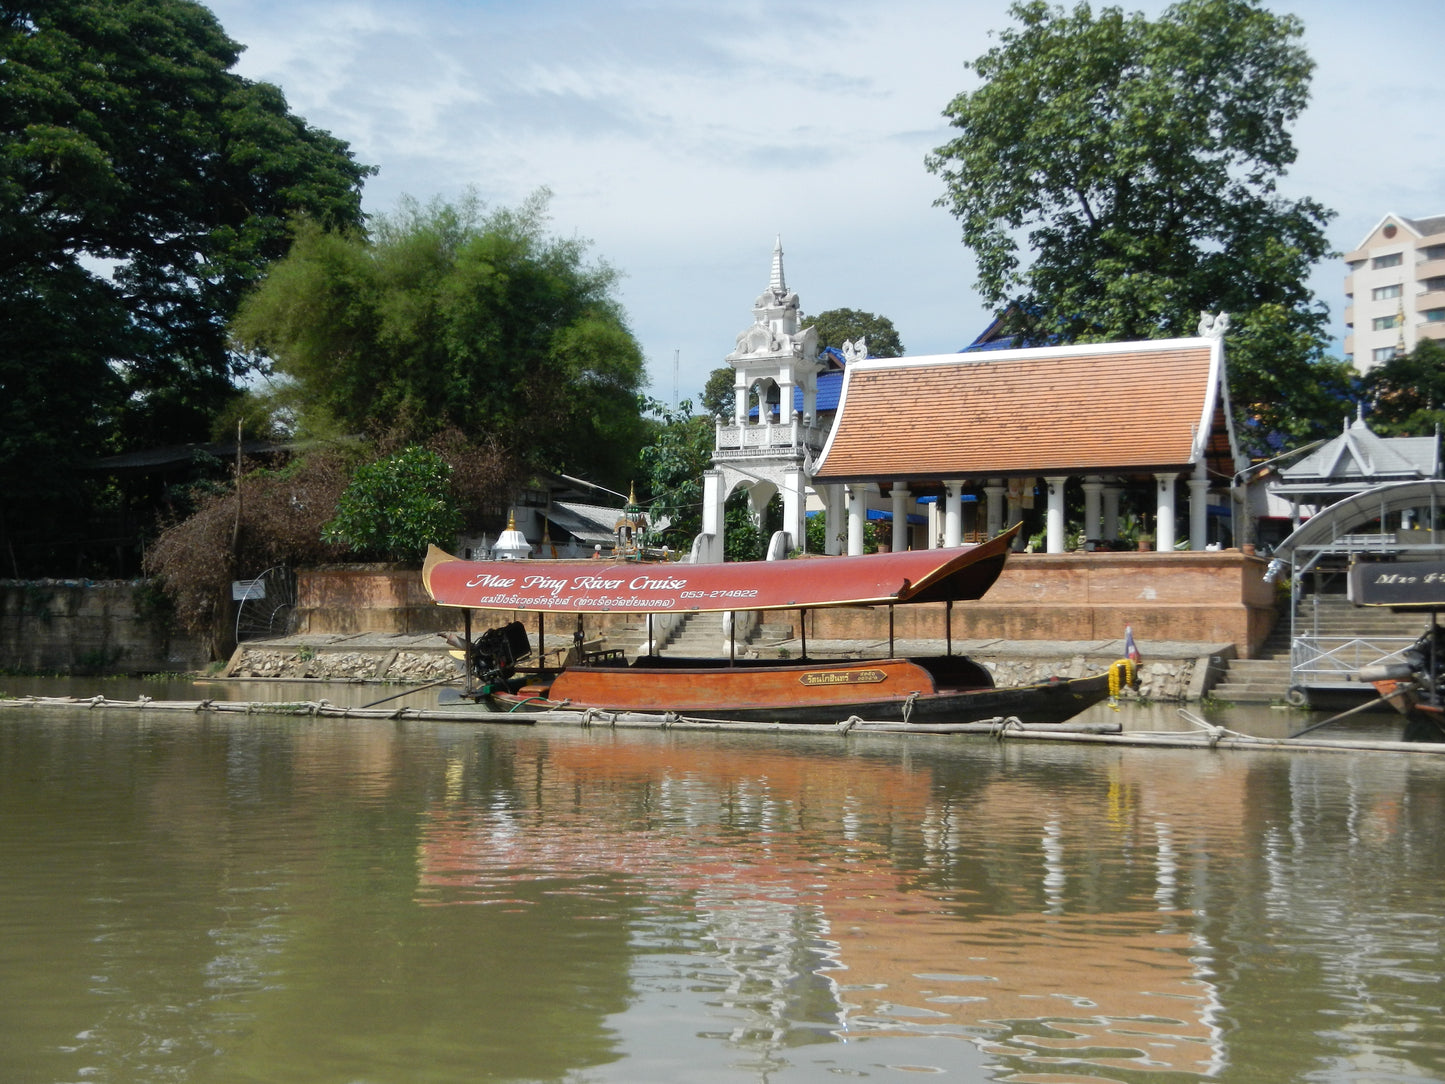 #M1  Chiang Mai Triathalon, Hike,Bike,Kayak  2700฿